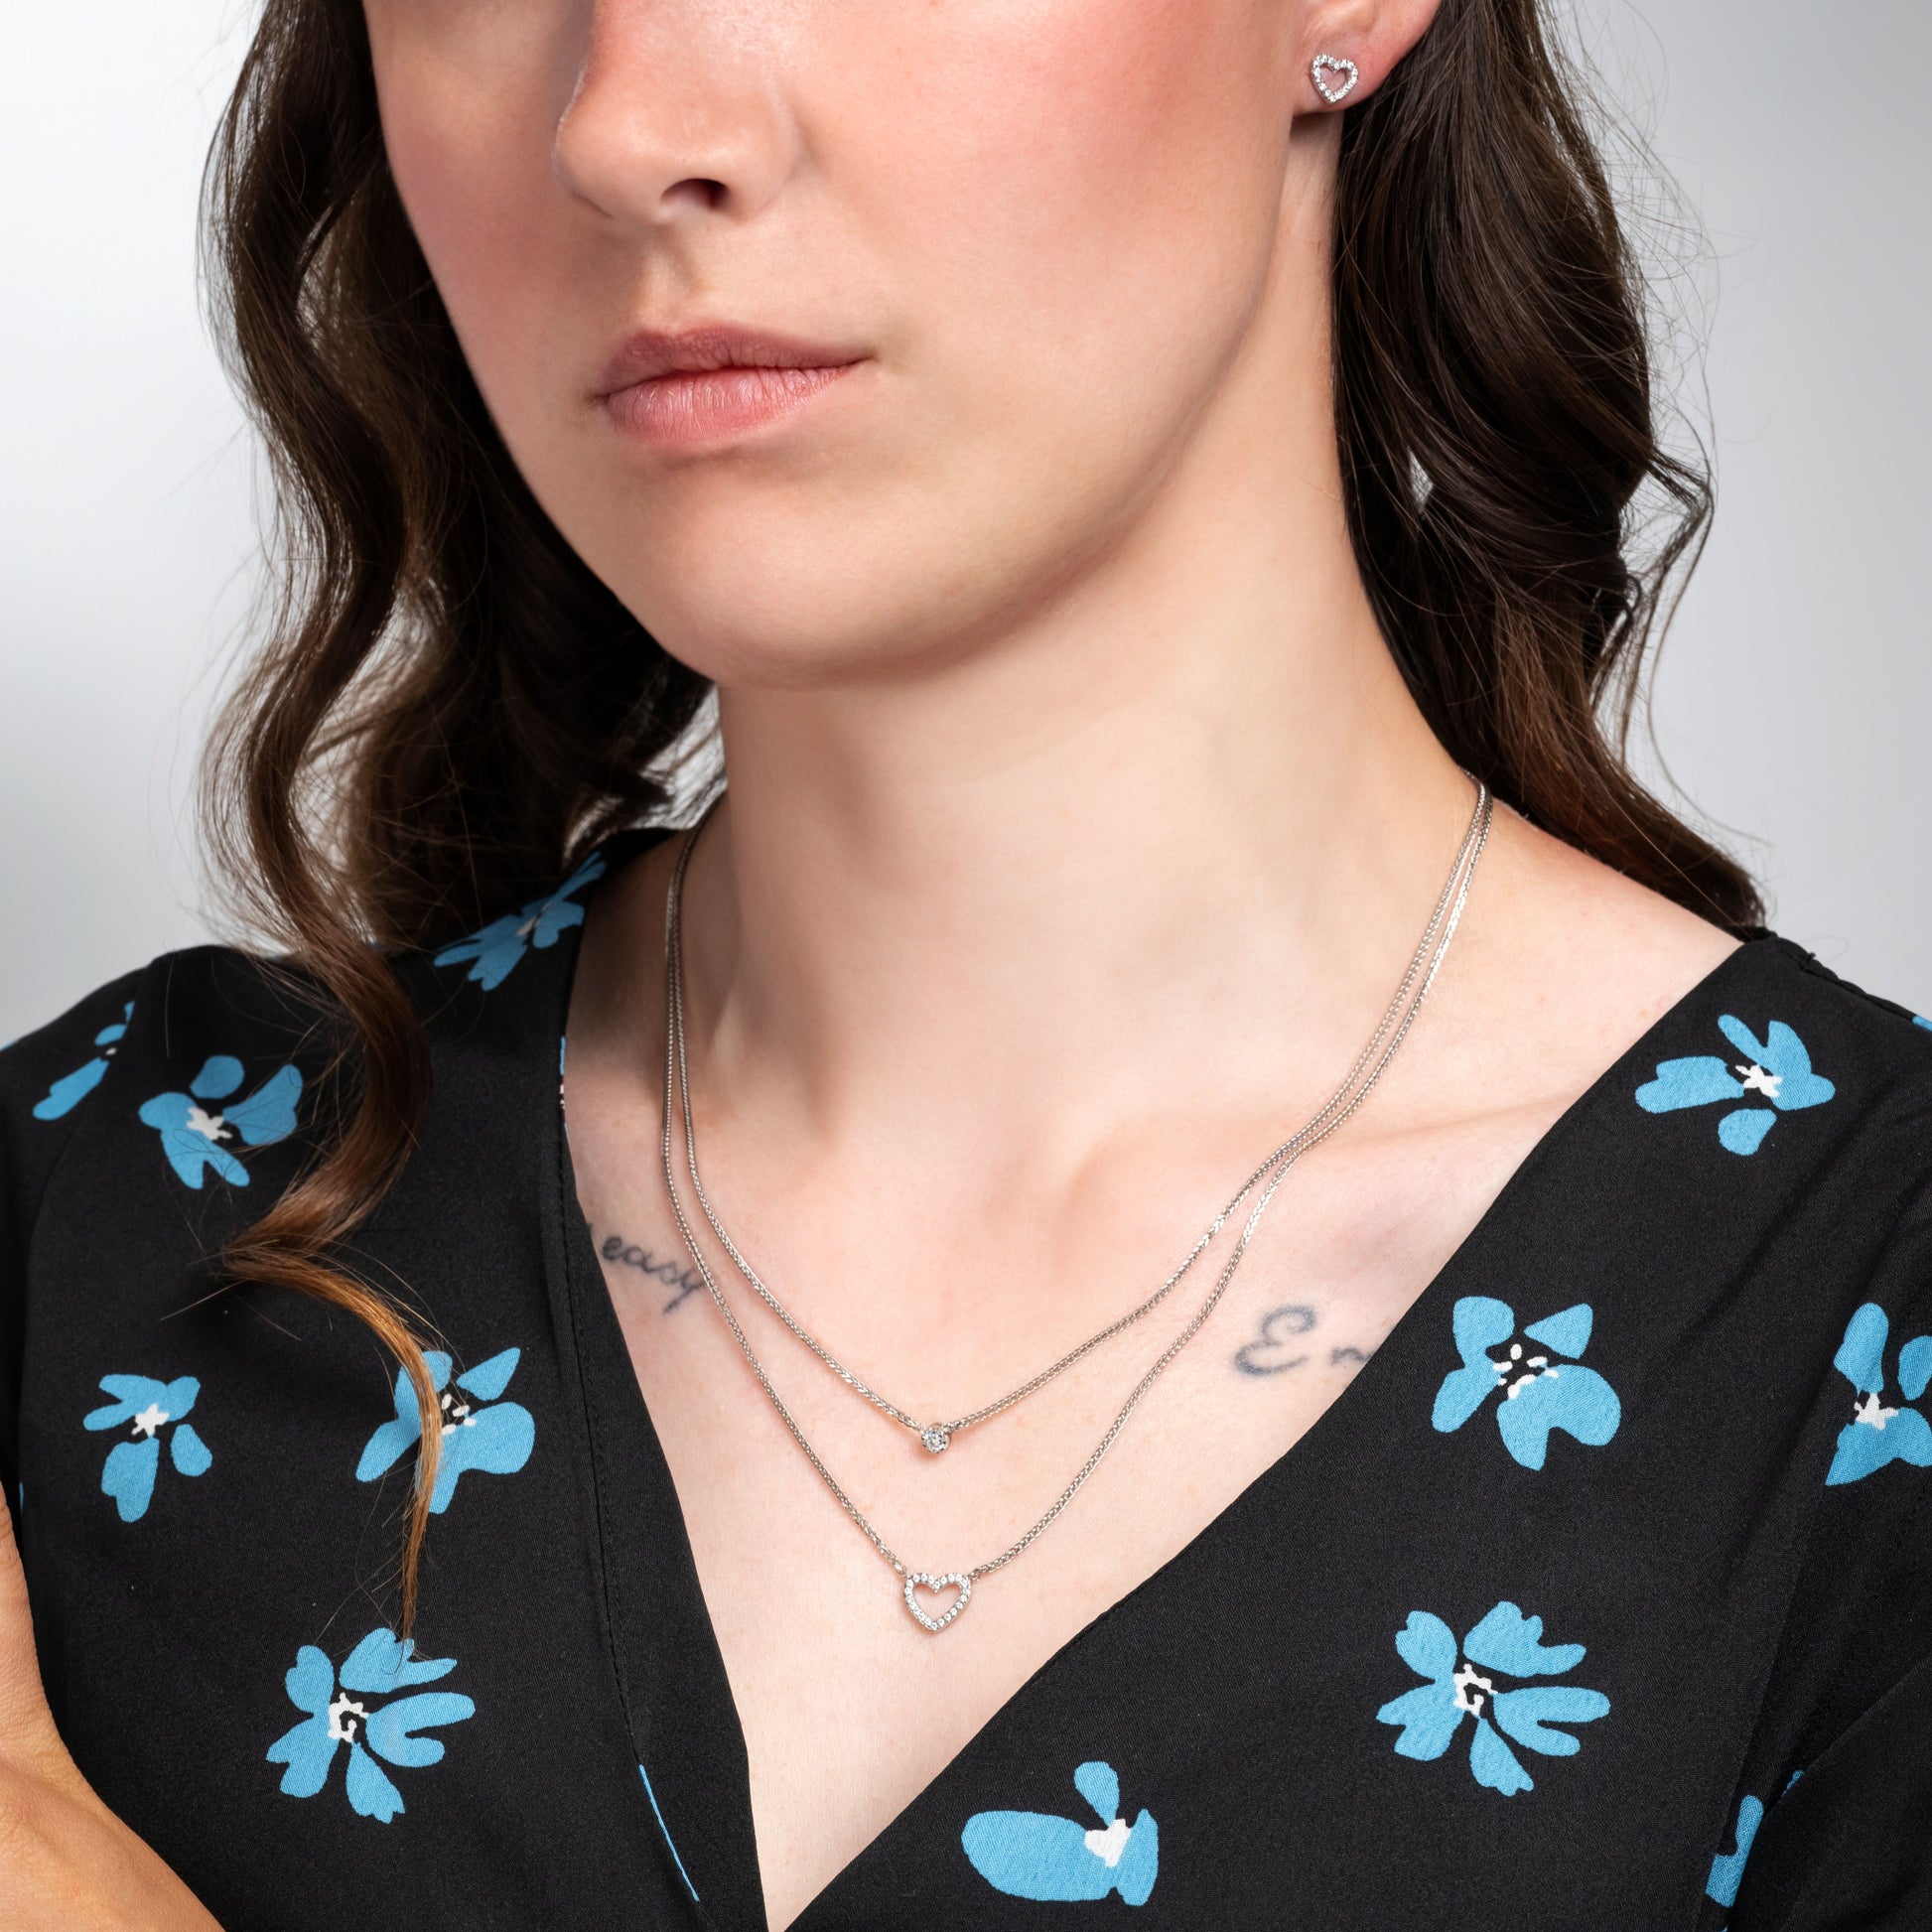 A model wearing Love Heart Earrings Necklace Silver Set